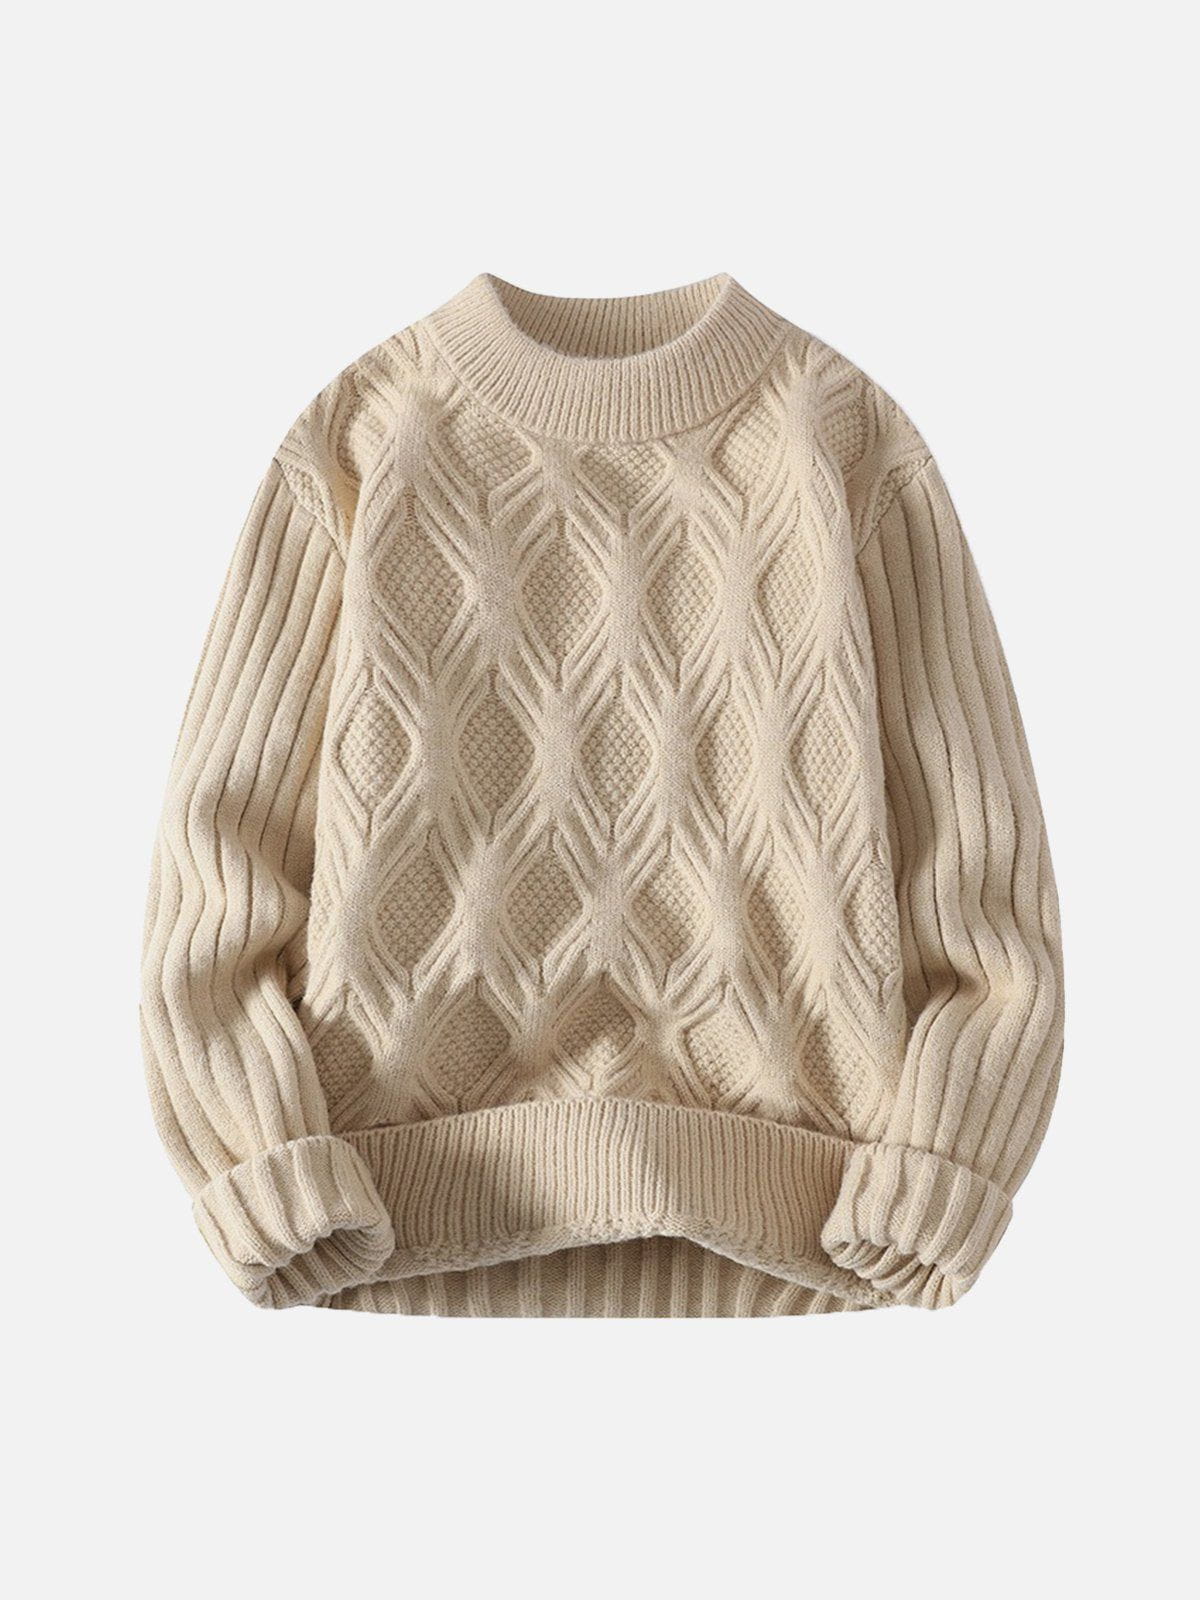 Eprezzy® - Woven Knit Sweater Streetwear Fashion - eprezzy.com